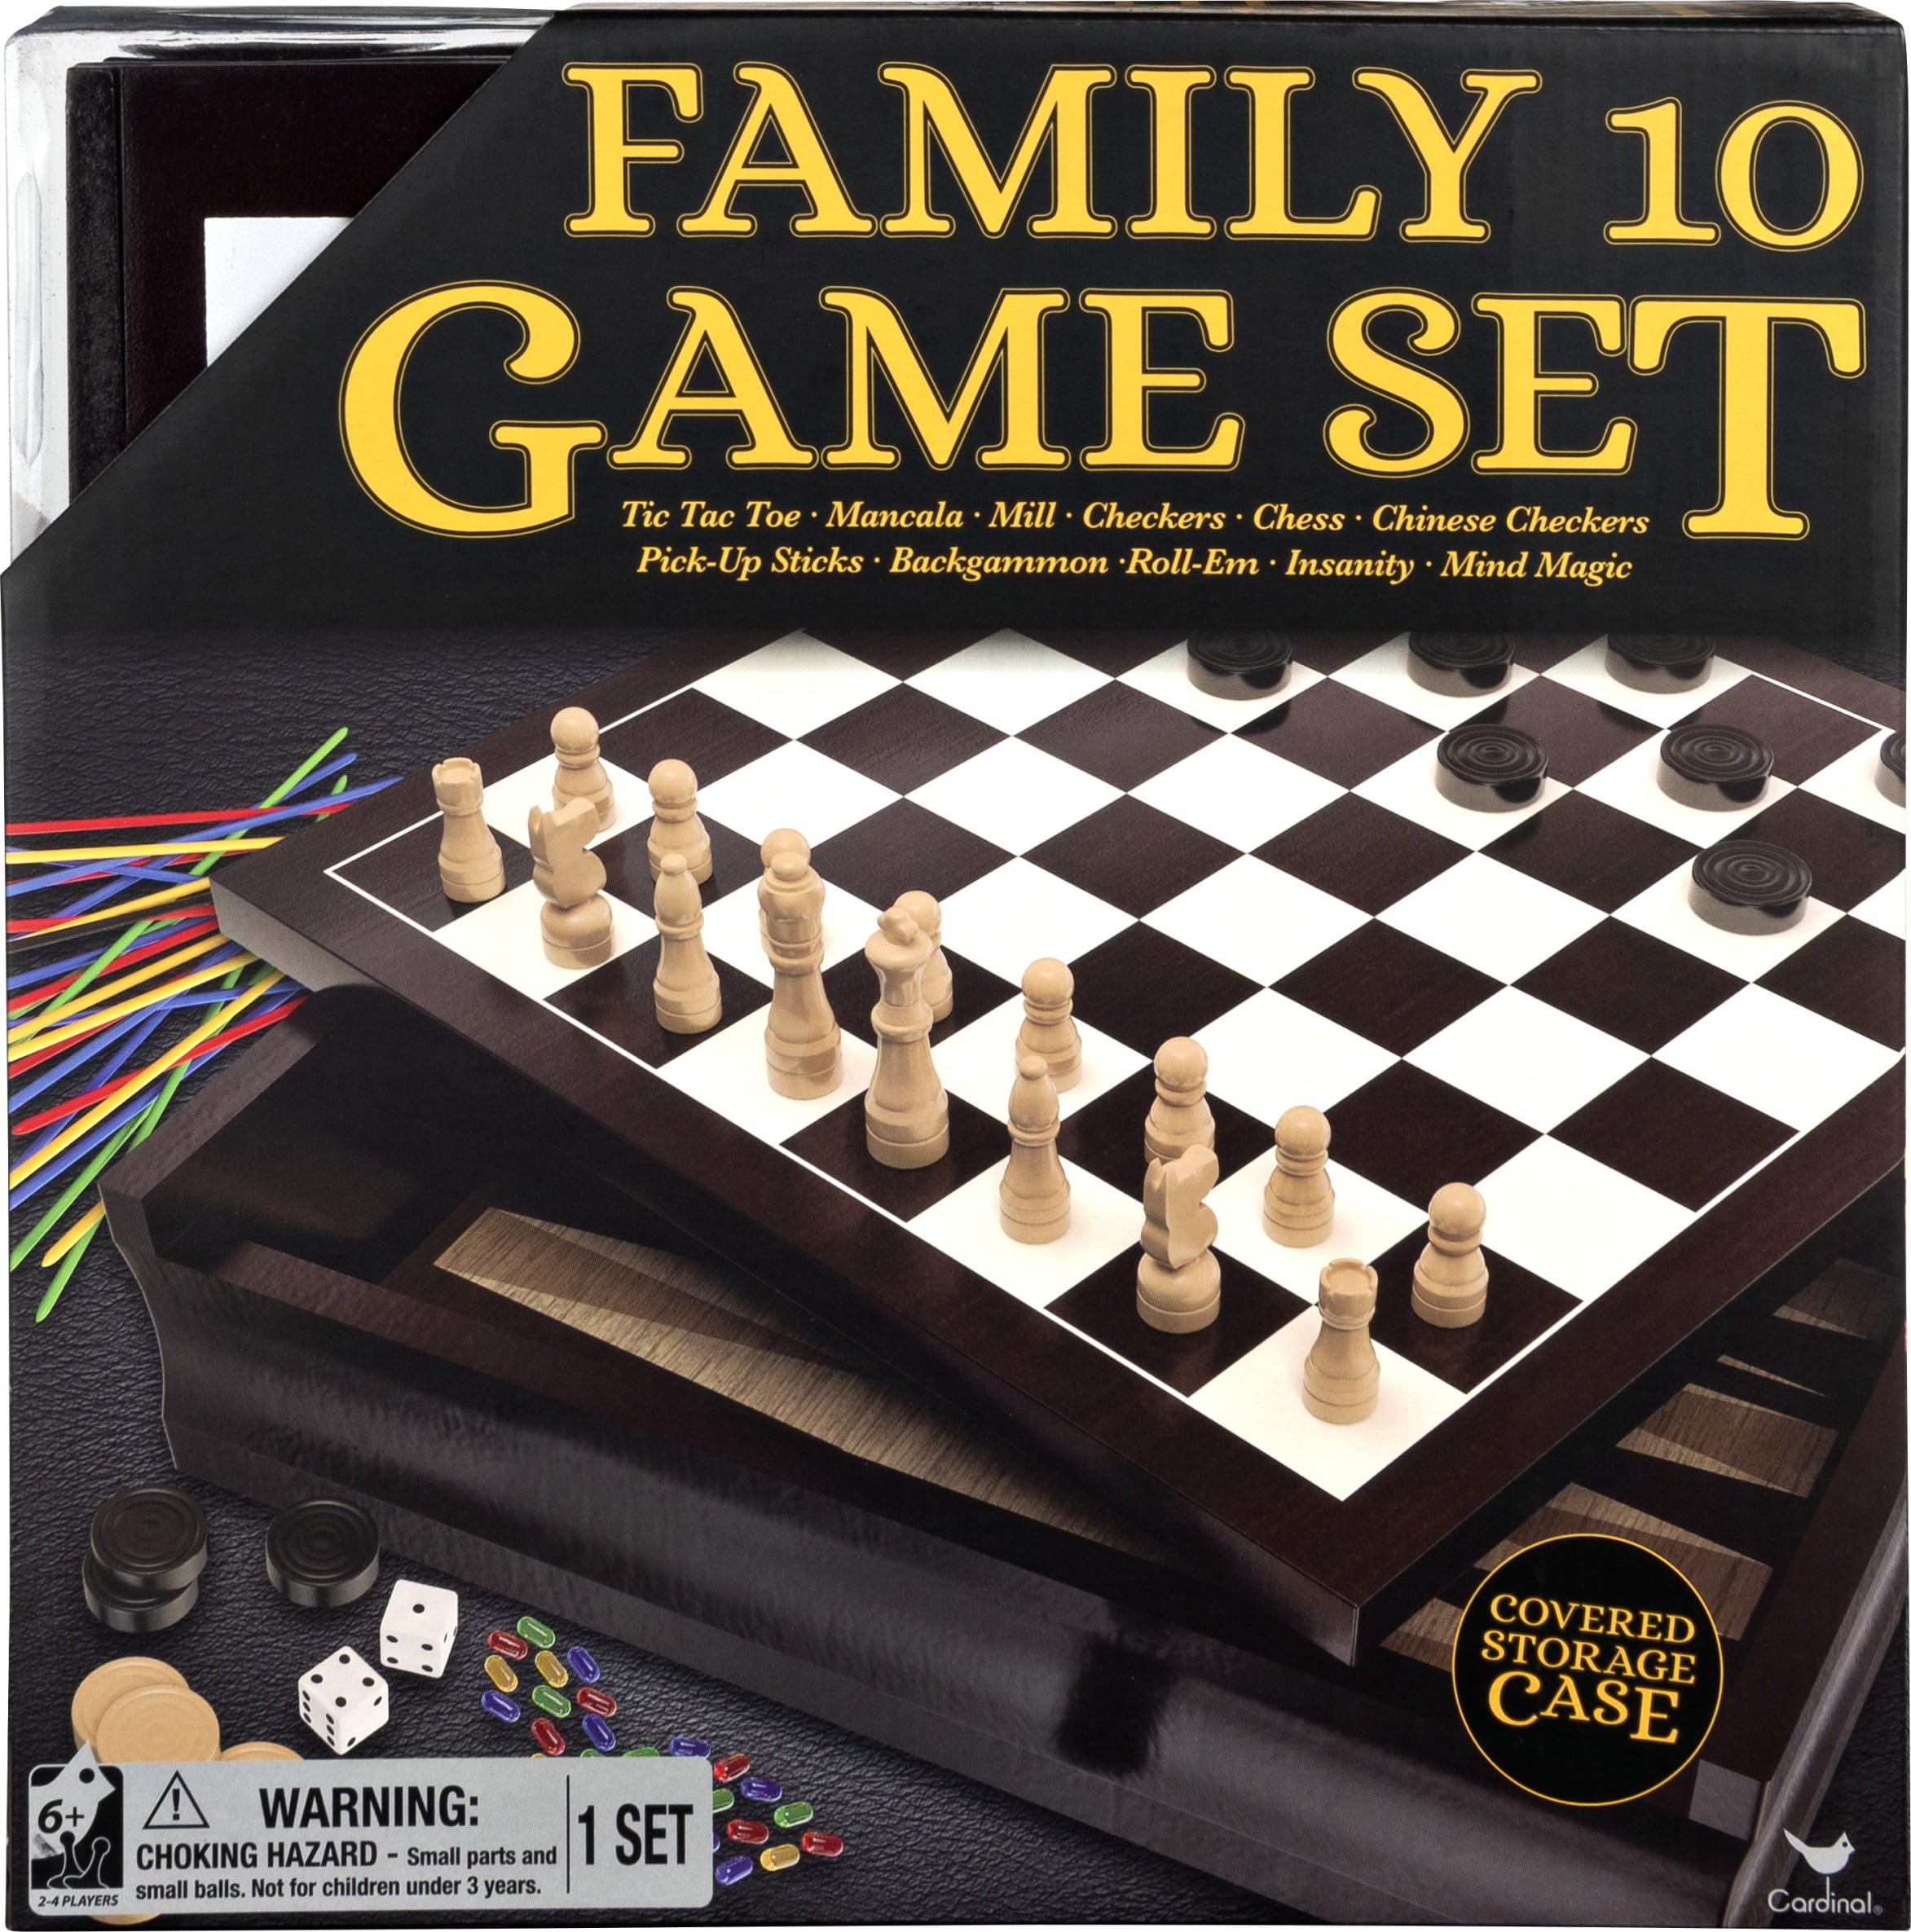 Professional Metal Pieces Chess Set Game Family Table Game Consol Checkers  Entertainment Pocket Go Xadrez Tabuleiro Jogo Games - AliExpress